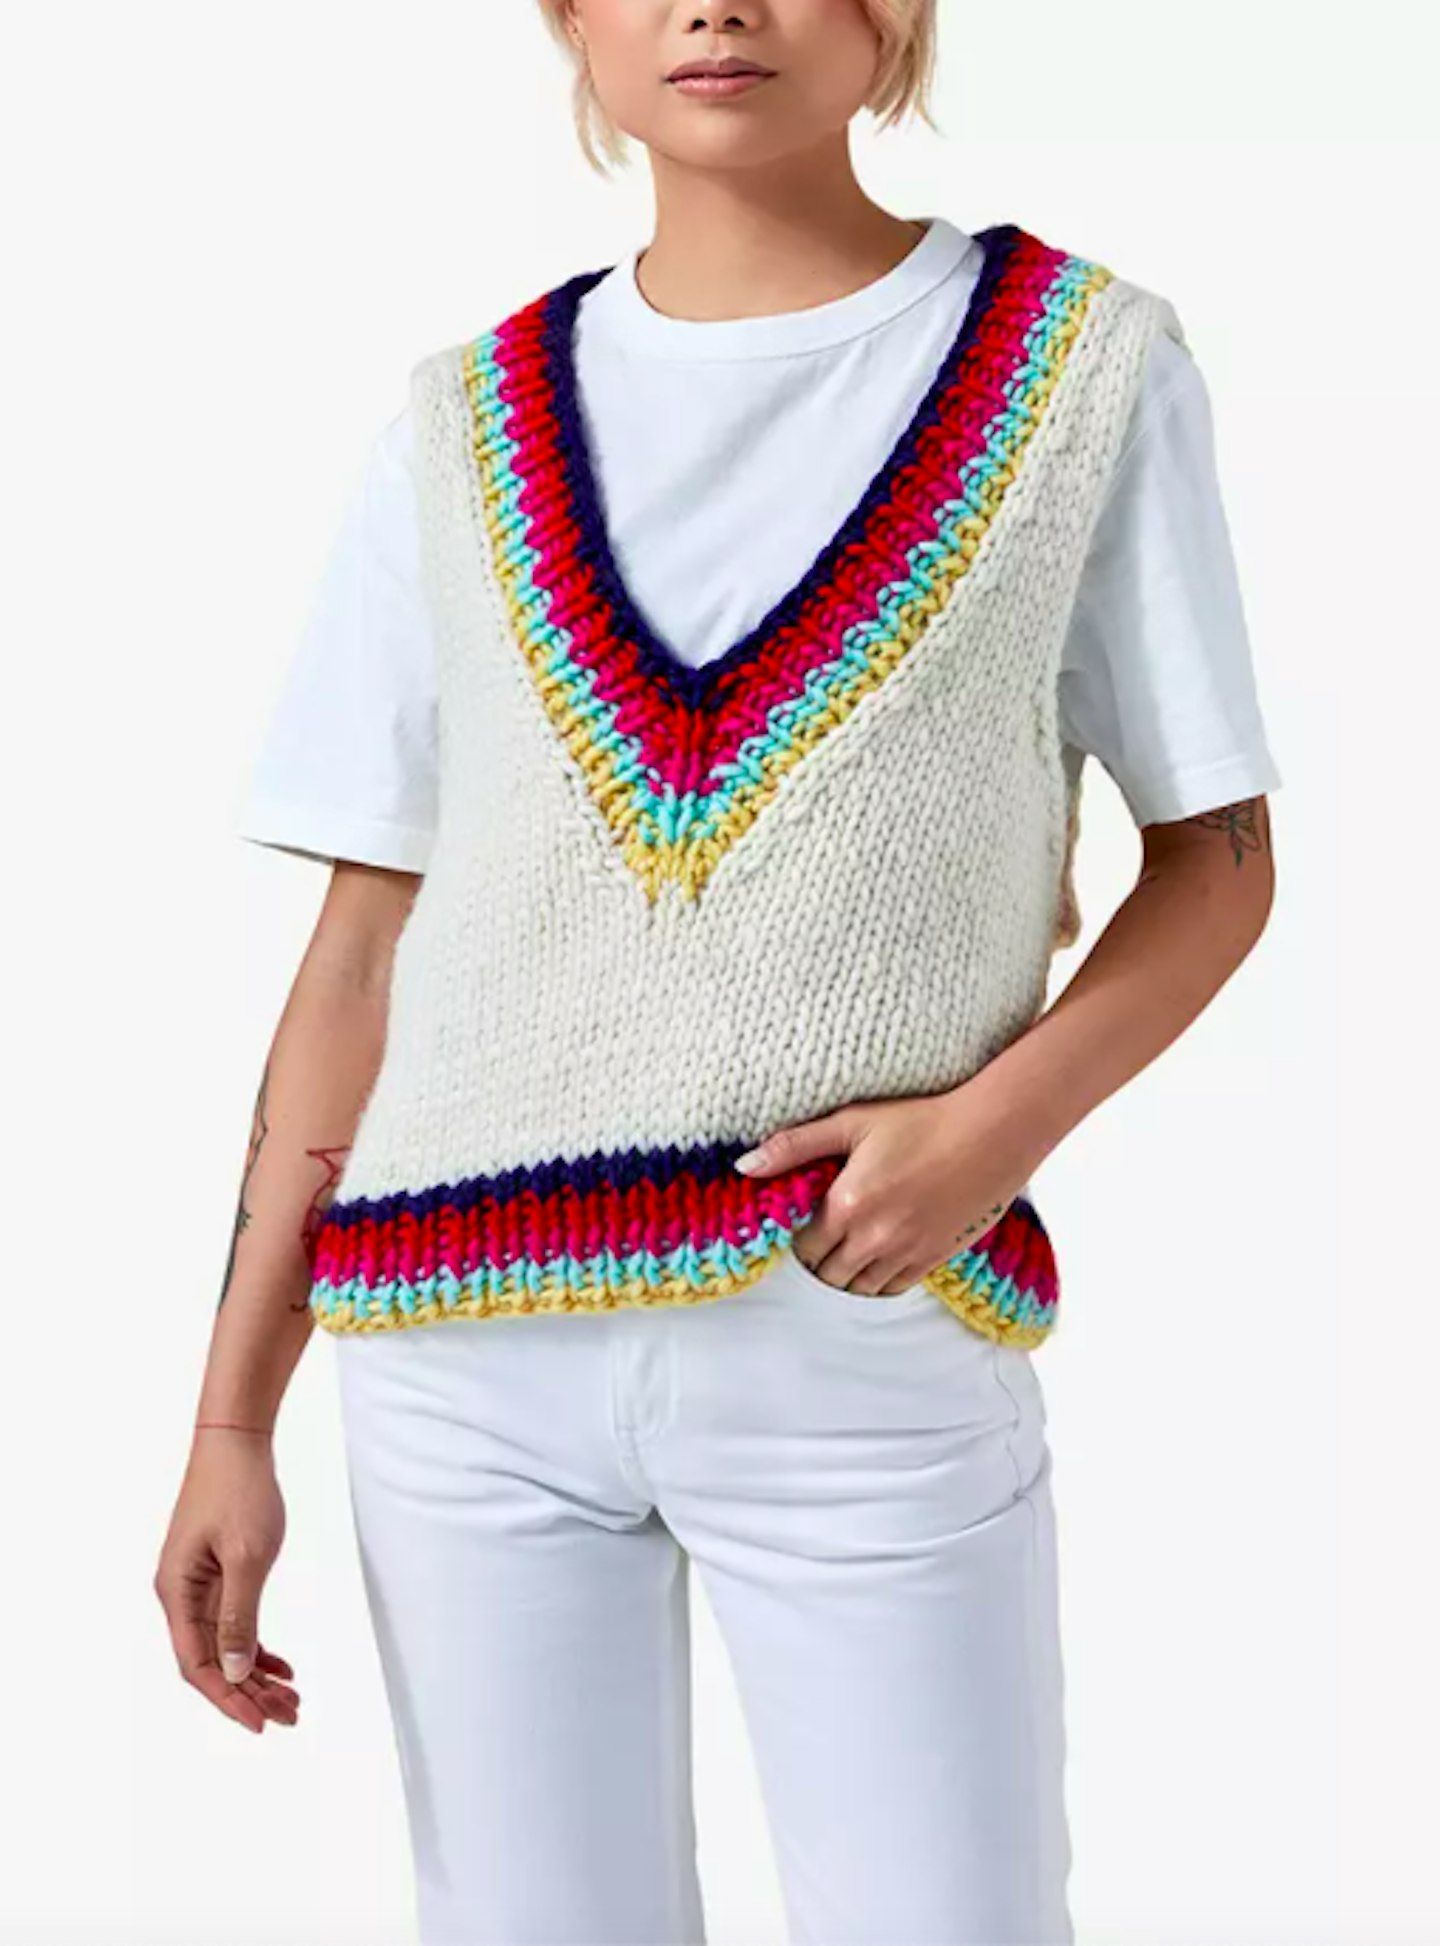 Vest Knitting Kit, £90